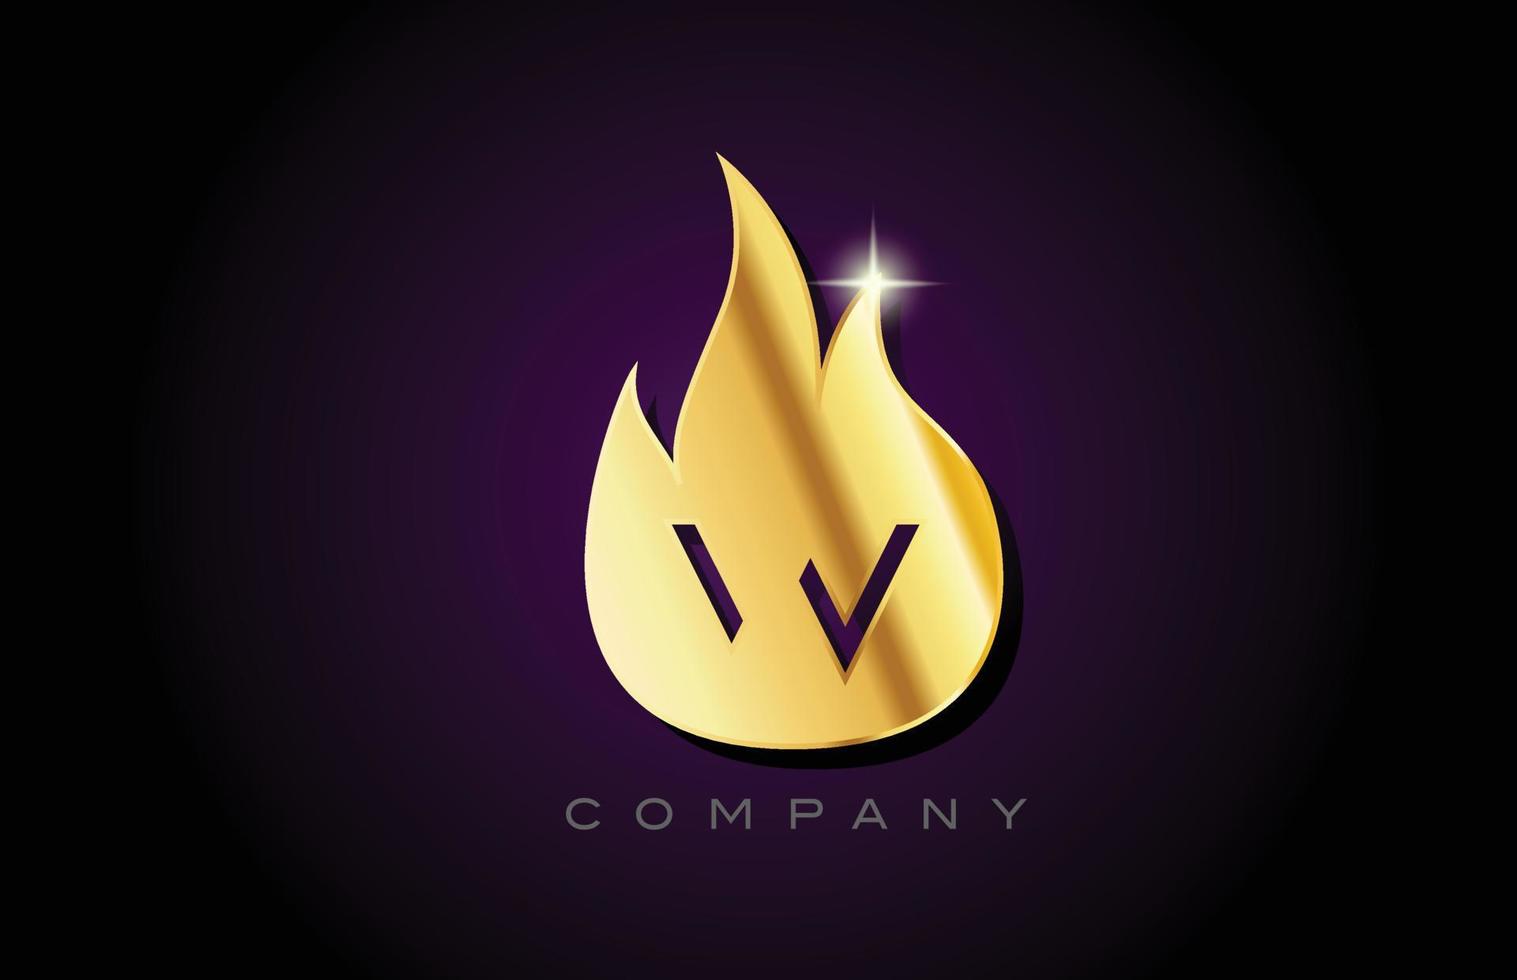 diseño del logotipo de la letra del alfabeto w de llamas doradas doradas. plantilla de icono creativo para negocios y empresas vector